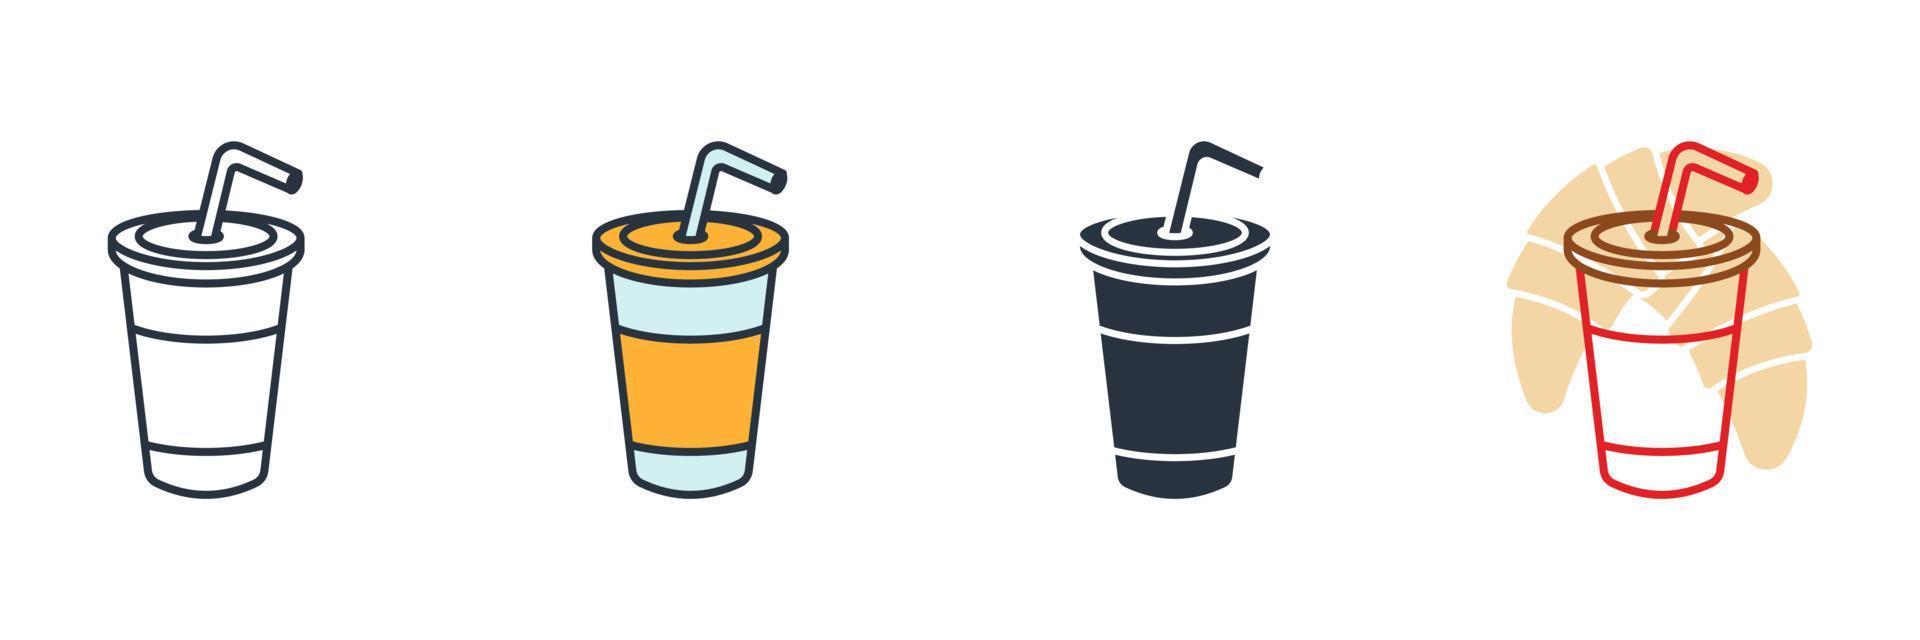 Softdrink-Symbol-Logo-Vektor-Illustration. Symbolvorlage für Saft oder kalte Getränke für Grafik- und Webdesign-Sammlung vektor